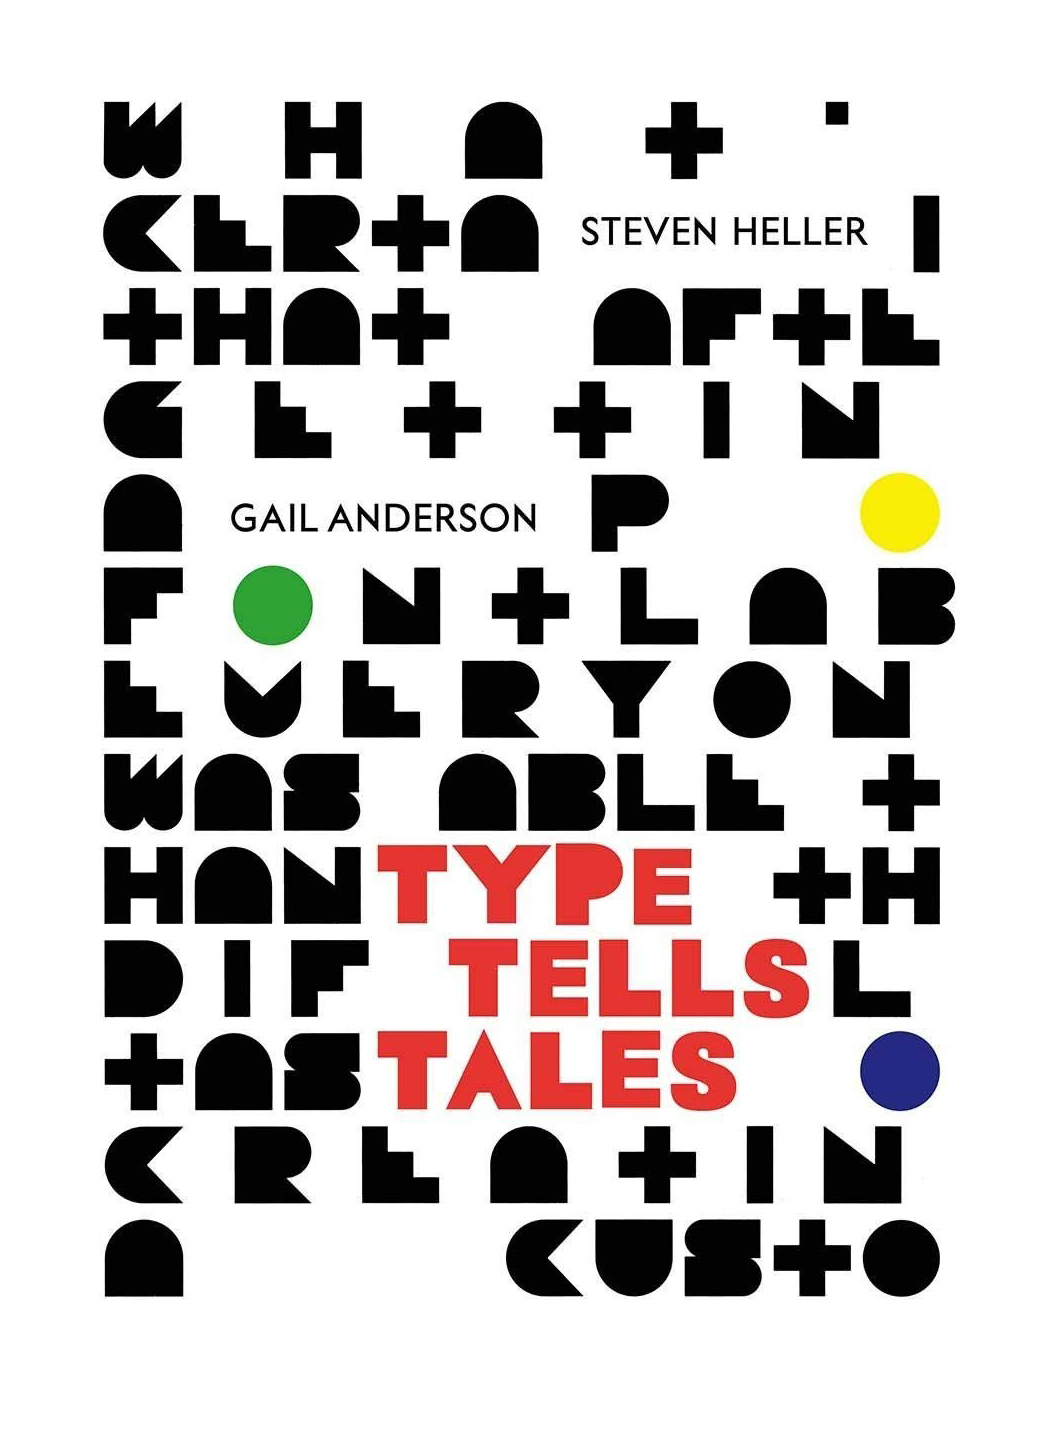  - Type Tells Tales